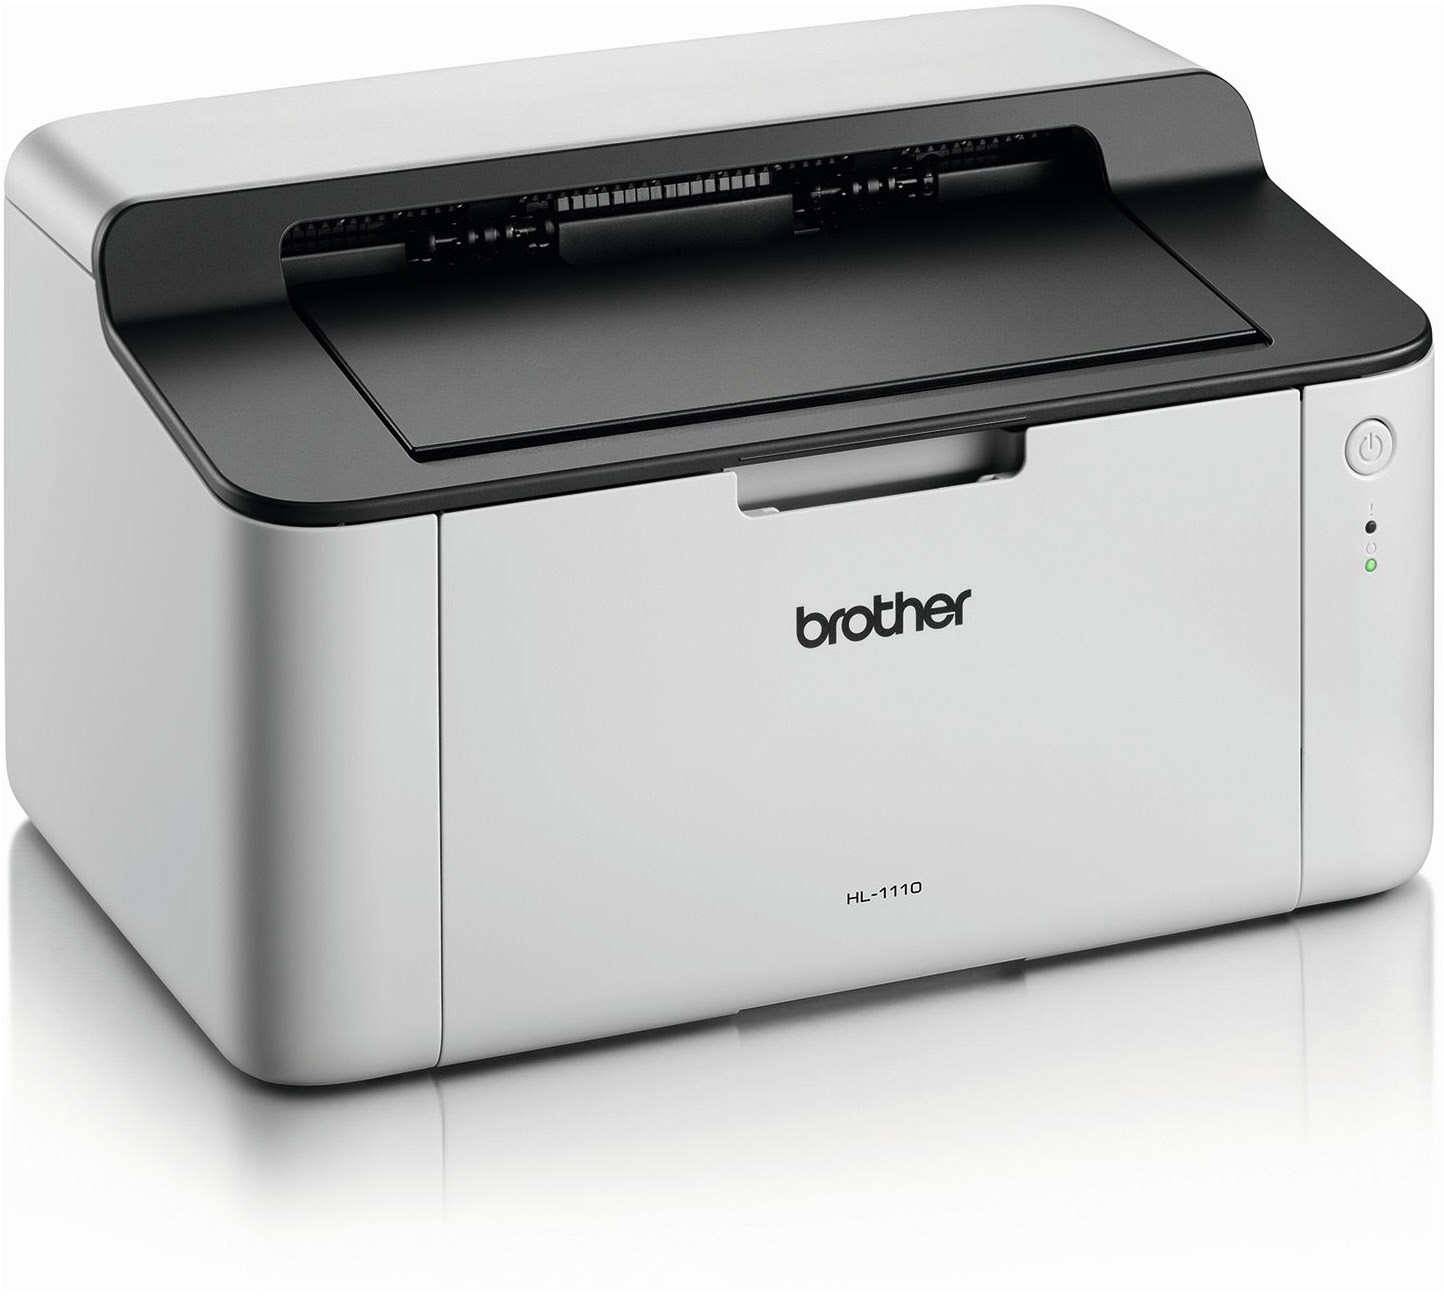 Brother HL-1110 s/w Laserdrucker schwarz